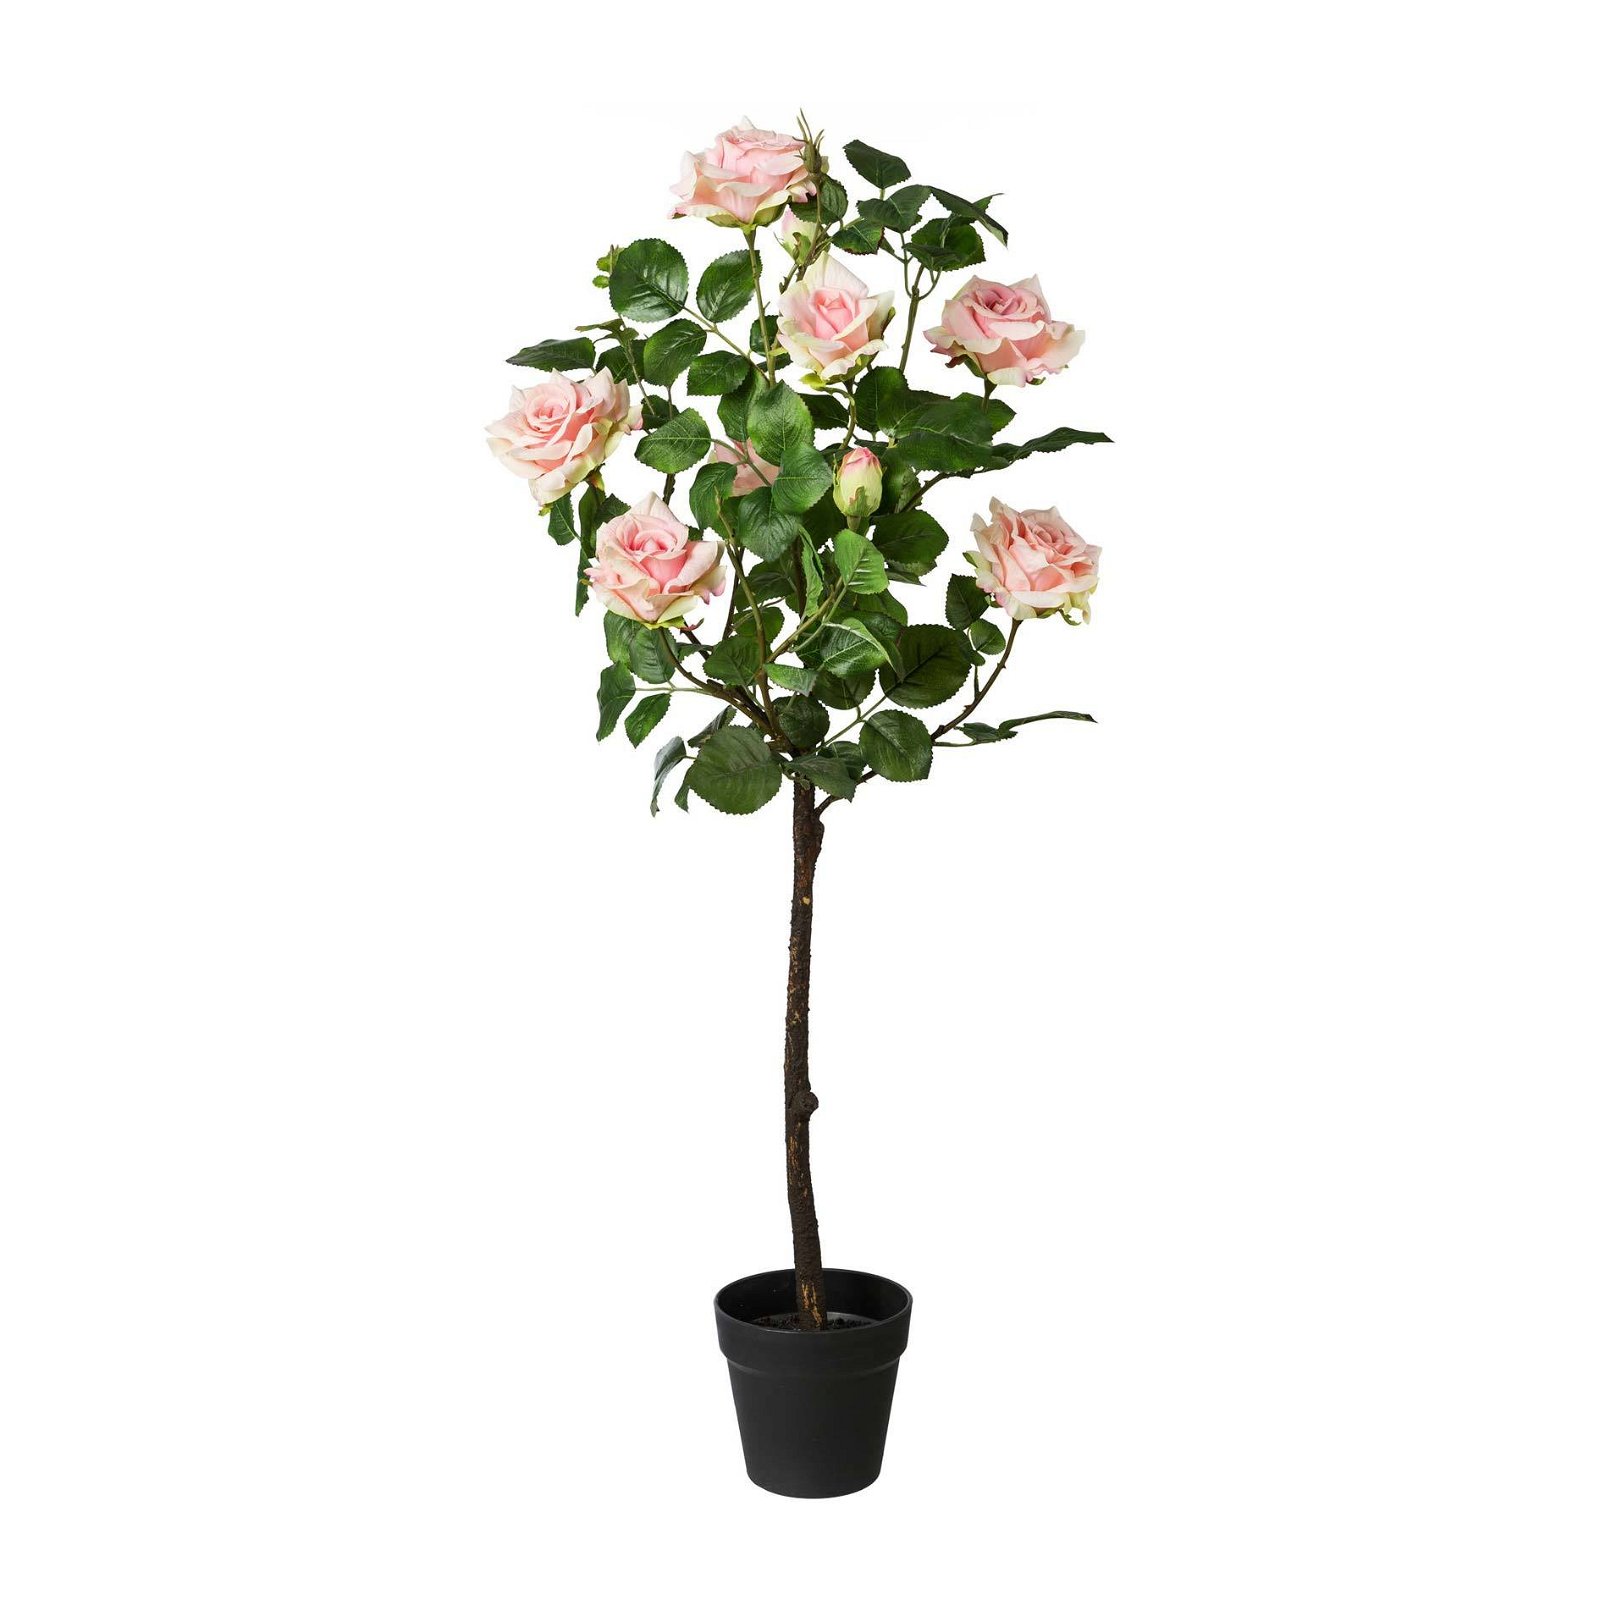 Rosenstamm künstlich, rosa, ca. 95 cm, im Kunststofftopf, Ø 14 x 13 cm